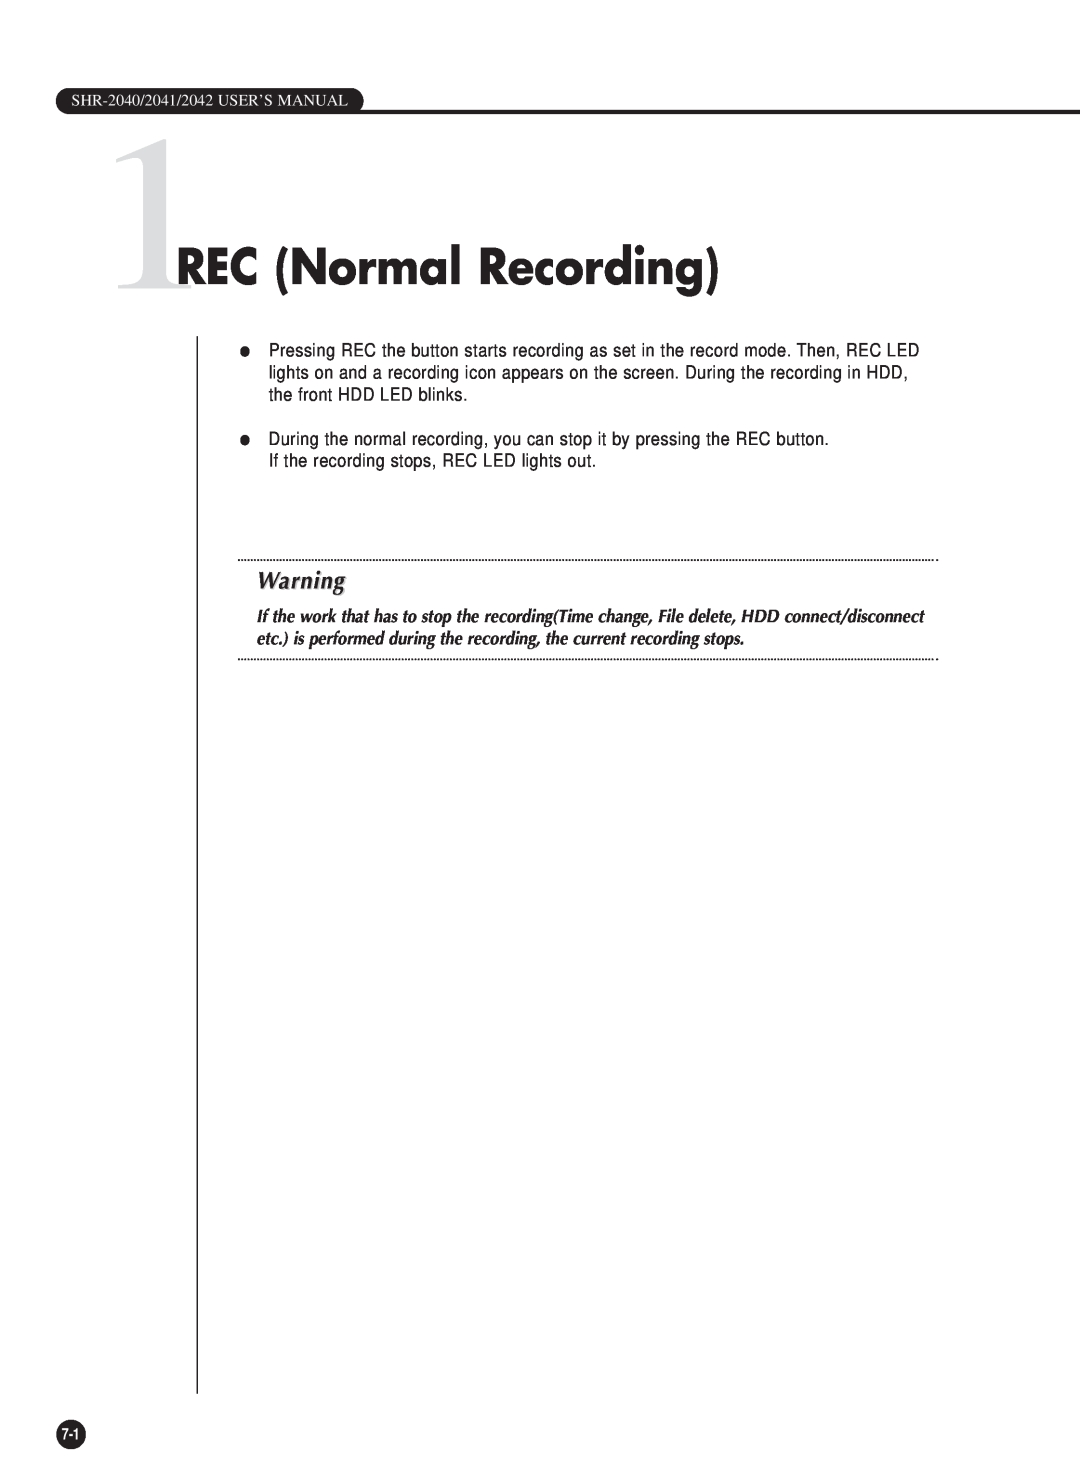 Samsung SHR-2040P/GAR, SHR-2042P, SHR-2040PX, SHR-2040P/XEC manual 1REC Normal Recording 